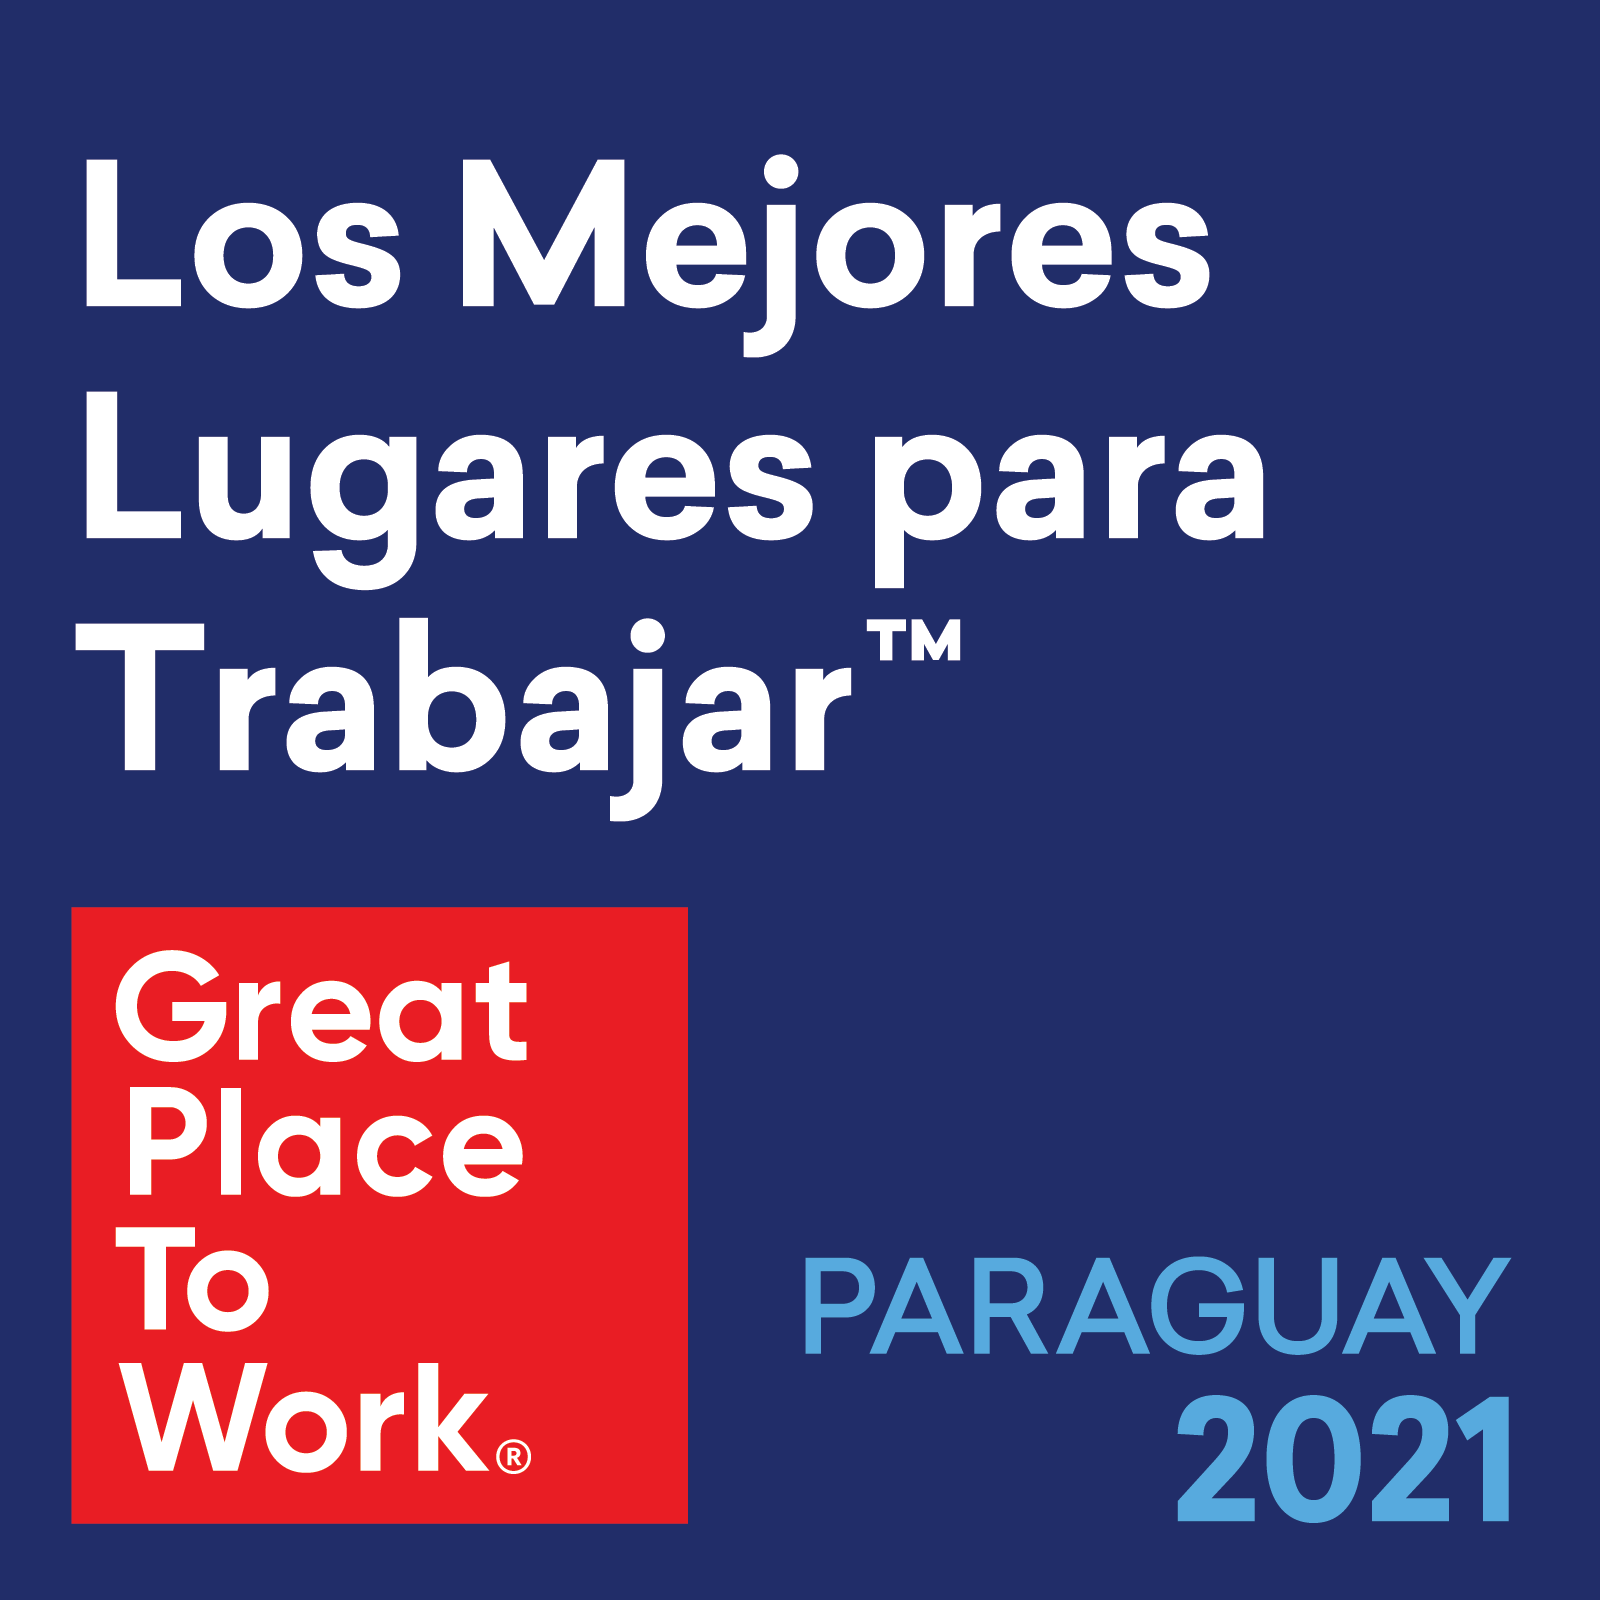 Paraguay_2021_Los_Mejores_Lugares_para_Trabajar